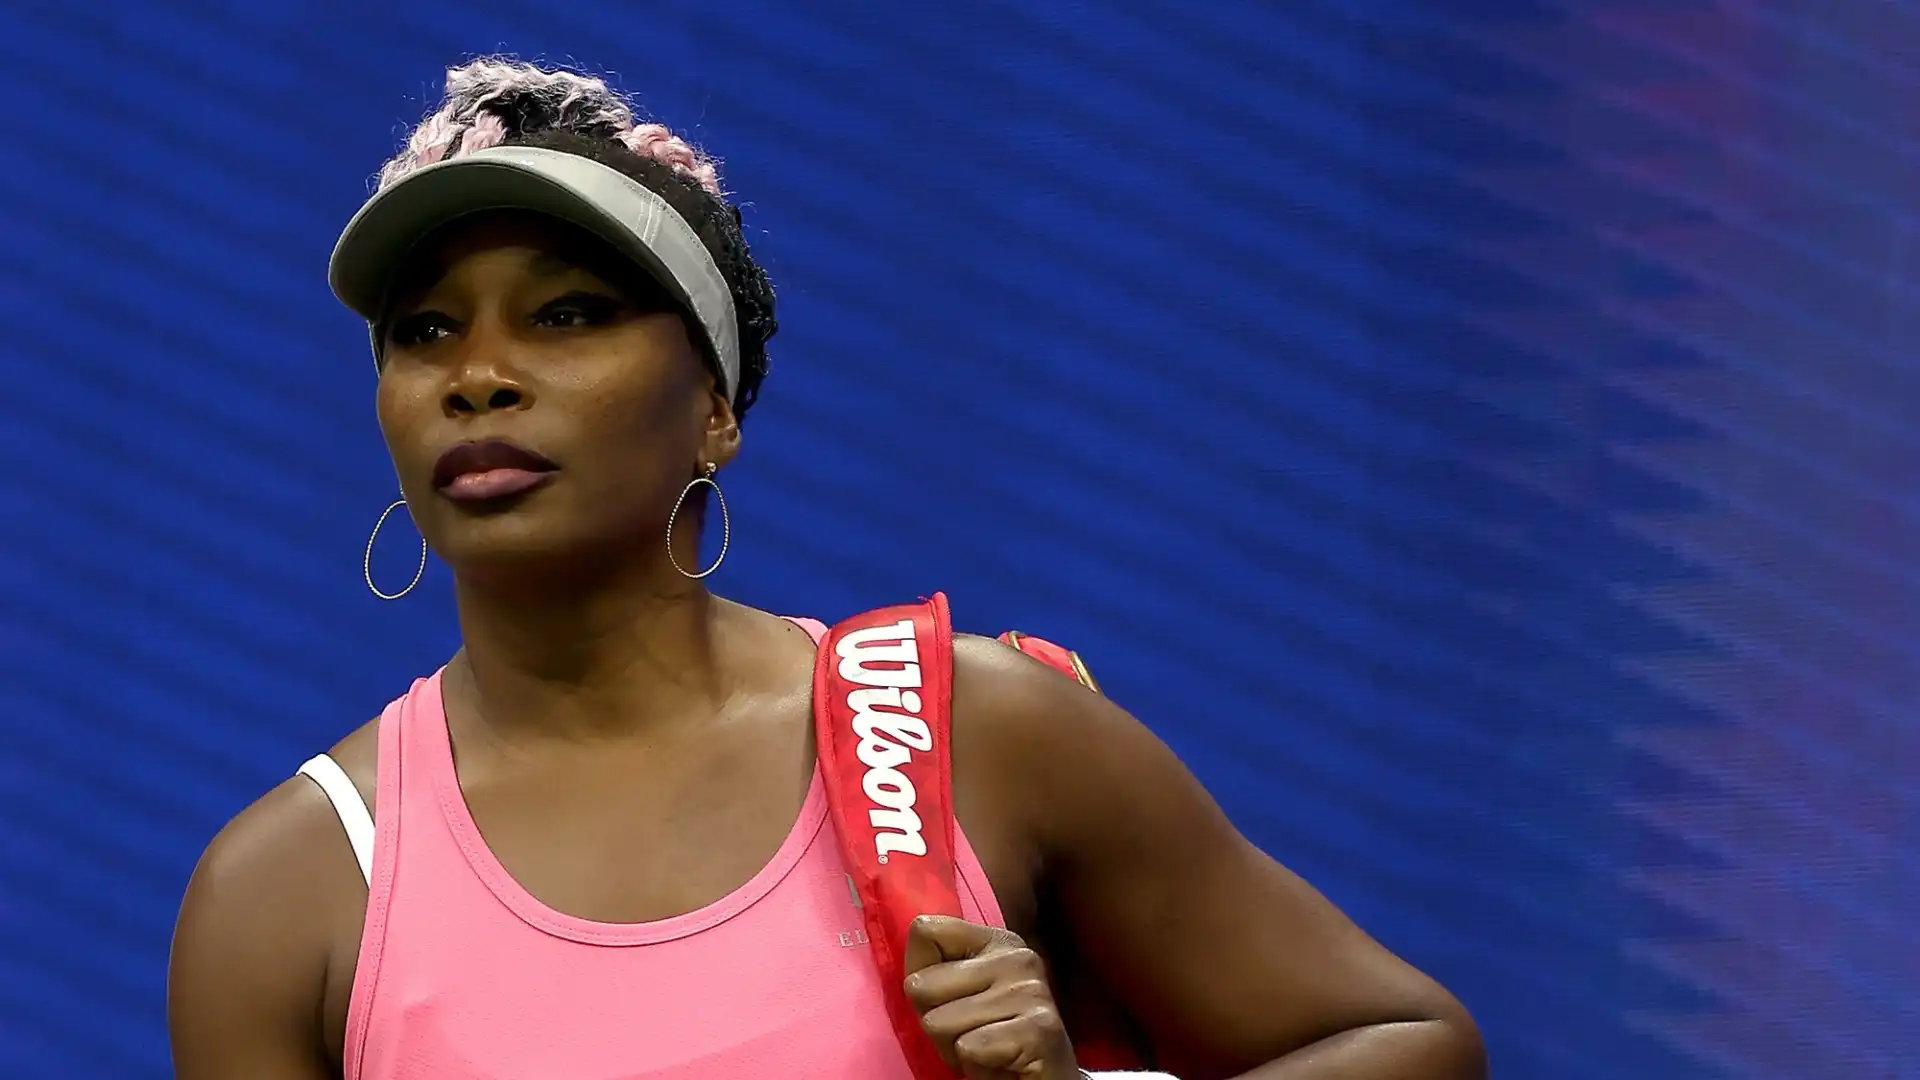 Venus Williams (Tennis): La campionessa statunitense ha guadagnato 12,2 milioni di dollari nonostante abbia giocato molto poco quest'anno